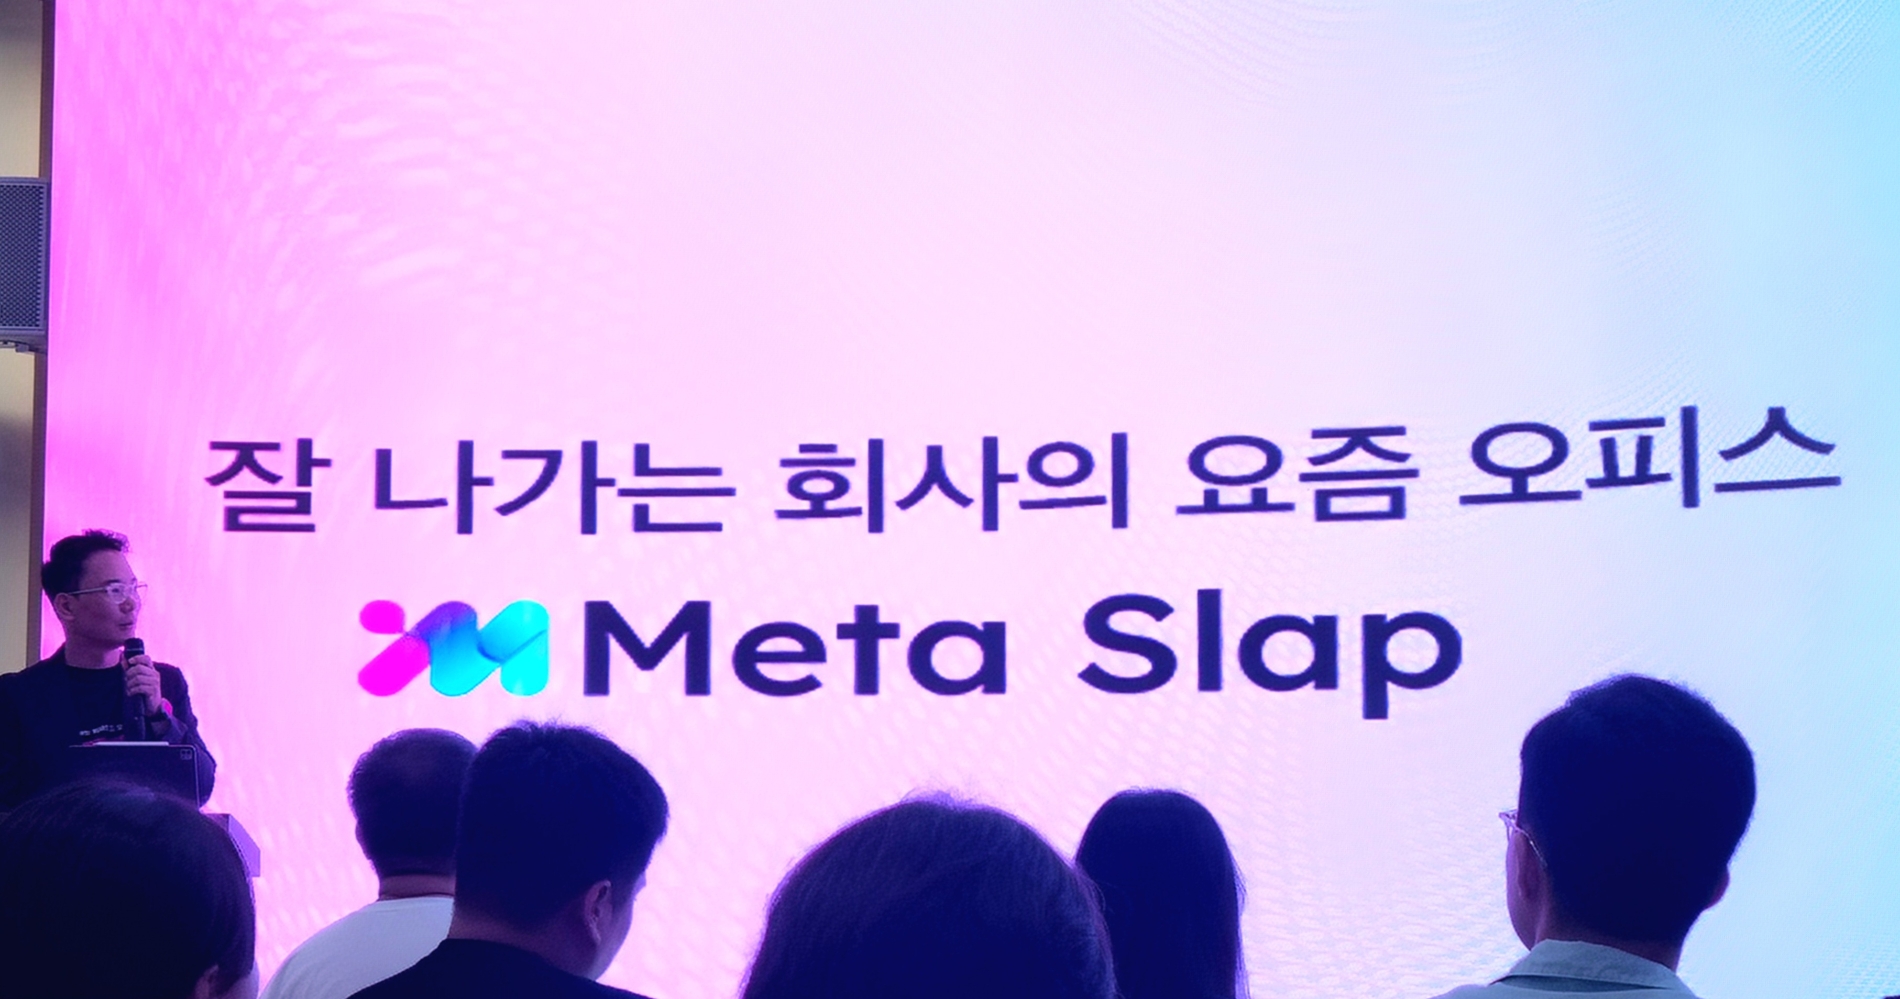 이현우 LG유플러스 가상오피스프로젝트팀장이 '메타슬랩'에 대해 소개하고 있다. 사진=정은경 기자